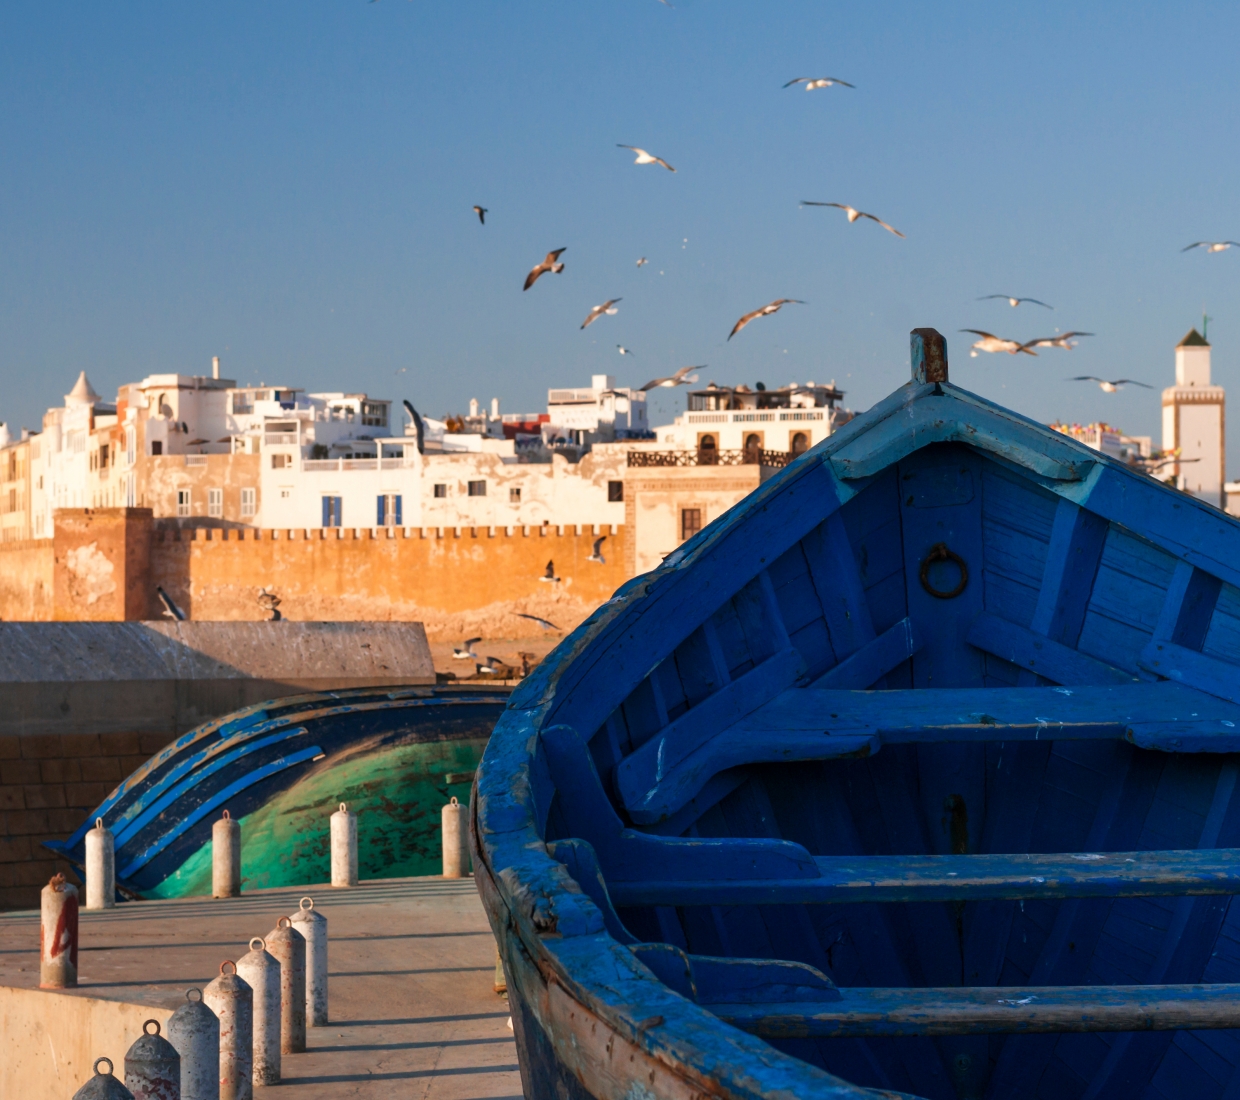 Hoteles con encanto Essaouira hoteles de lujo y casas rurales